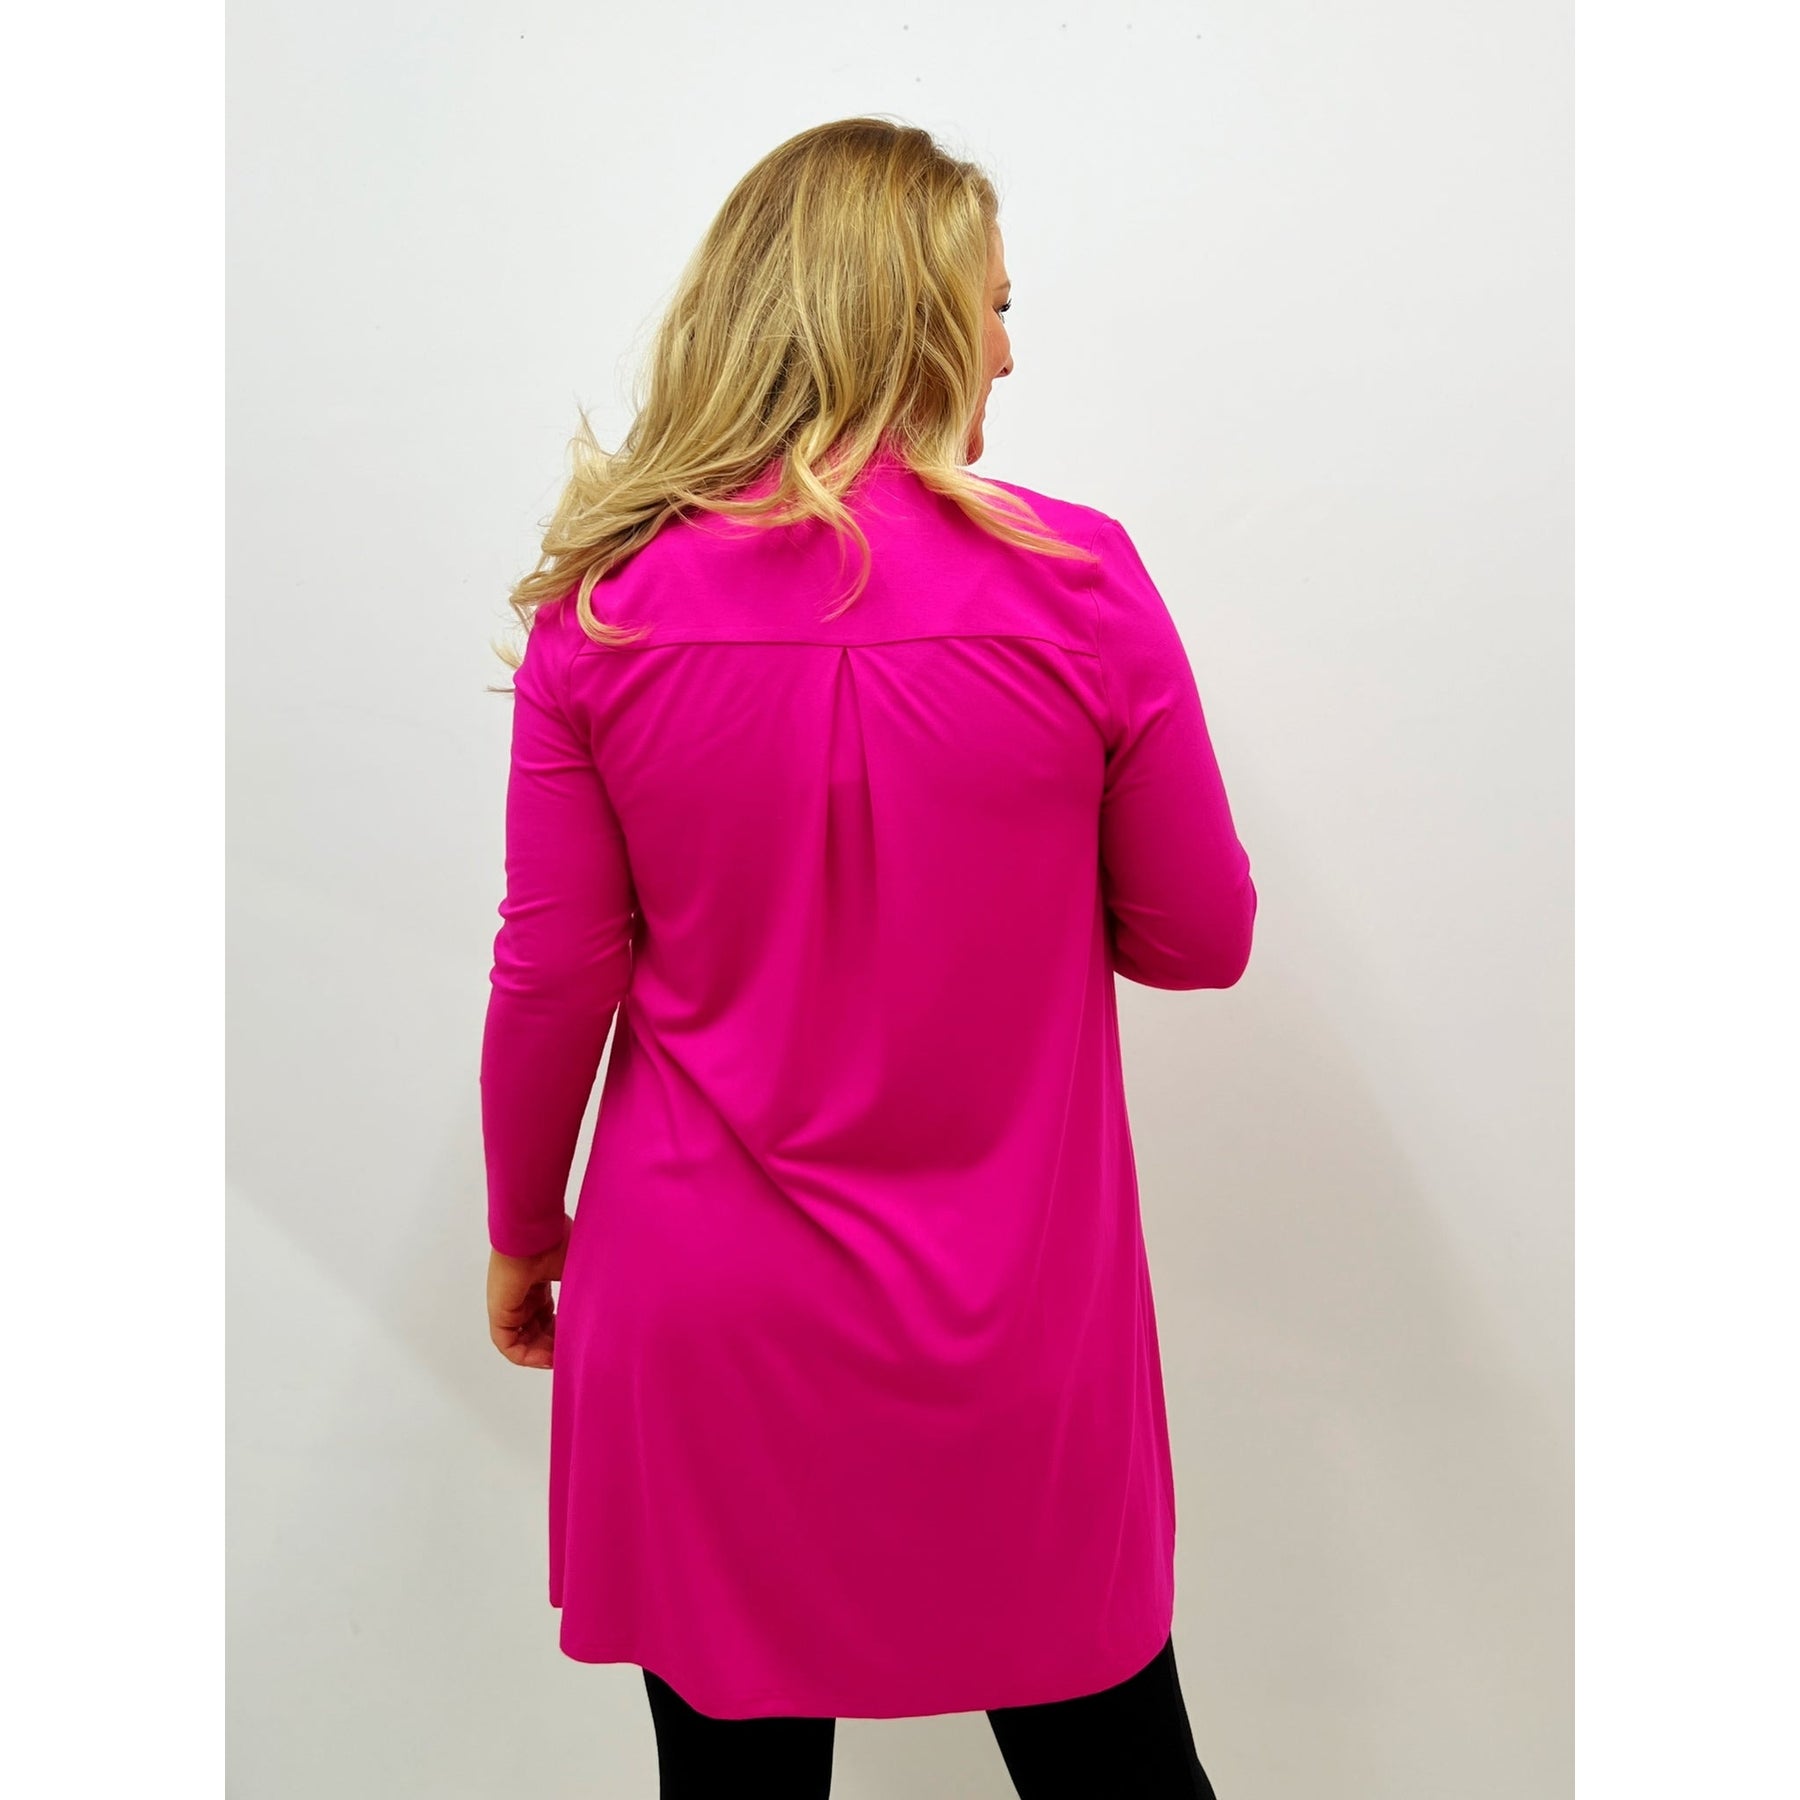 Mellomi Cara Cardigan in Pink - Wardrobe Plus